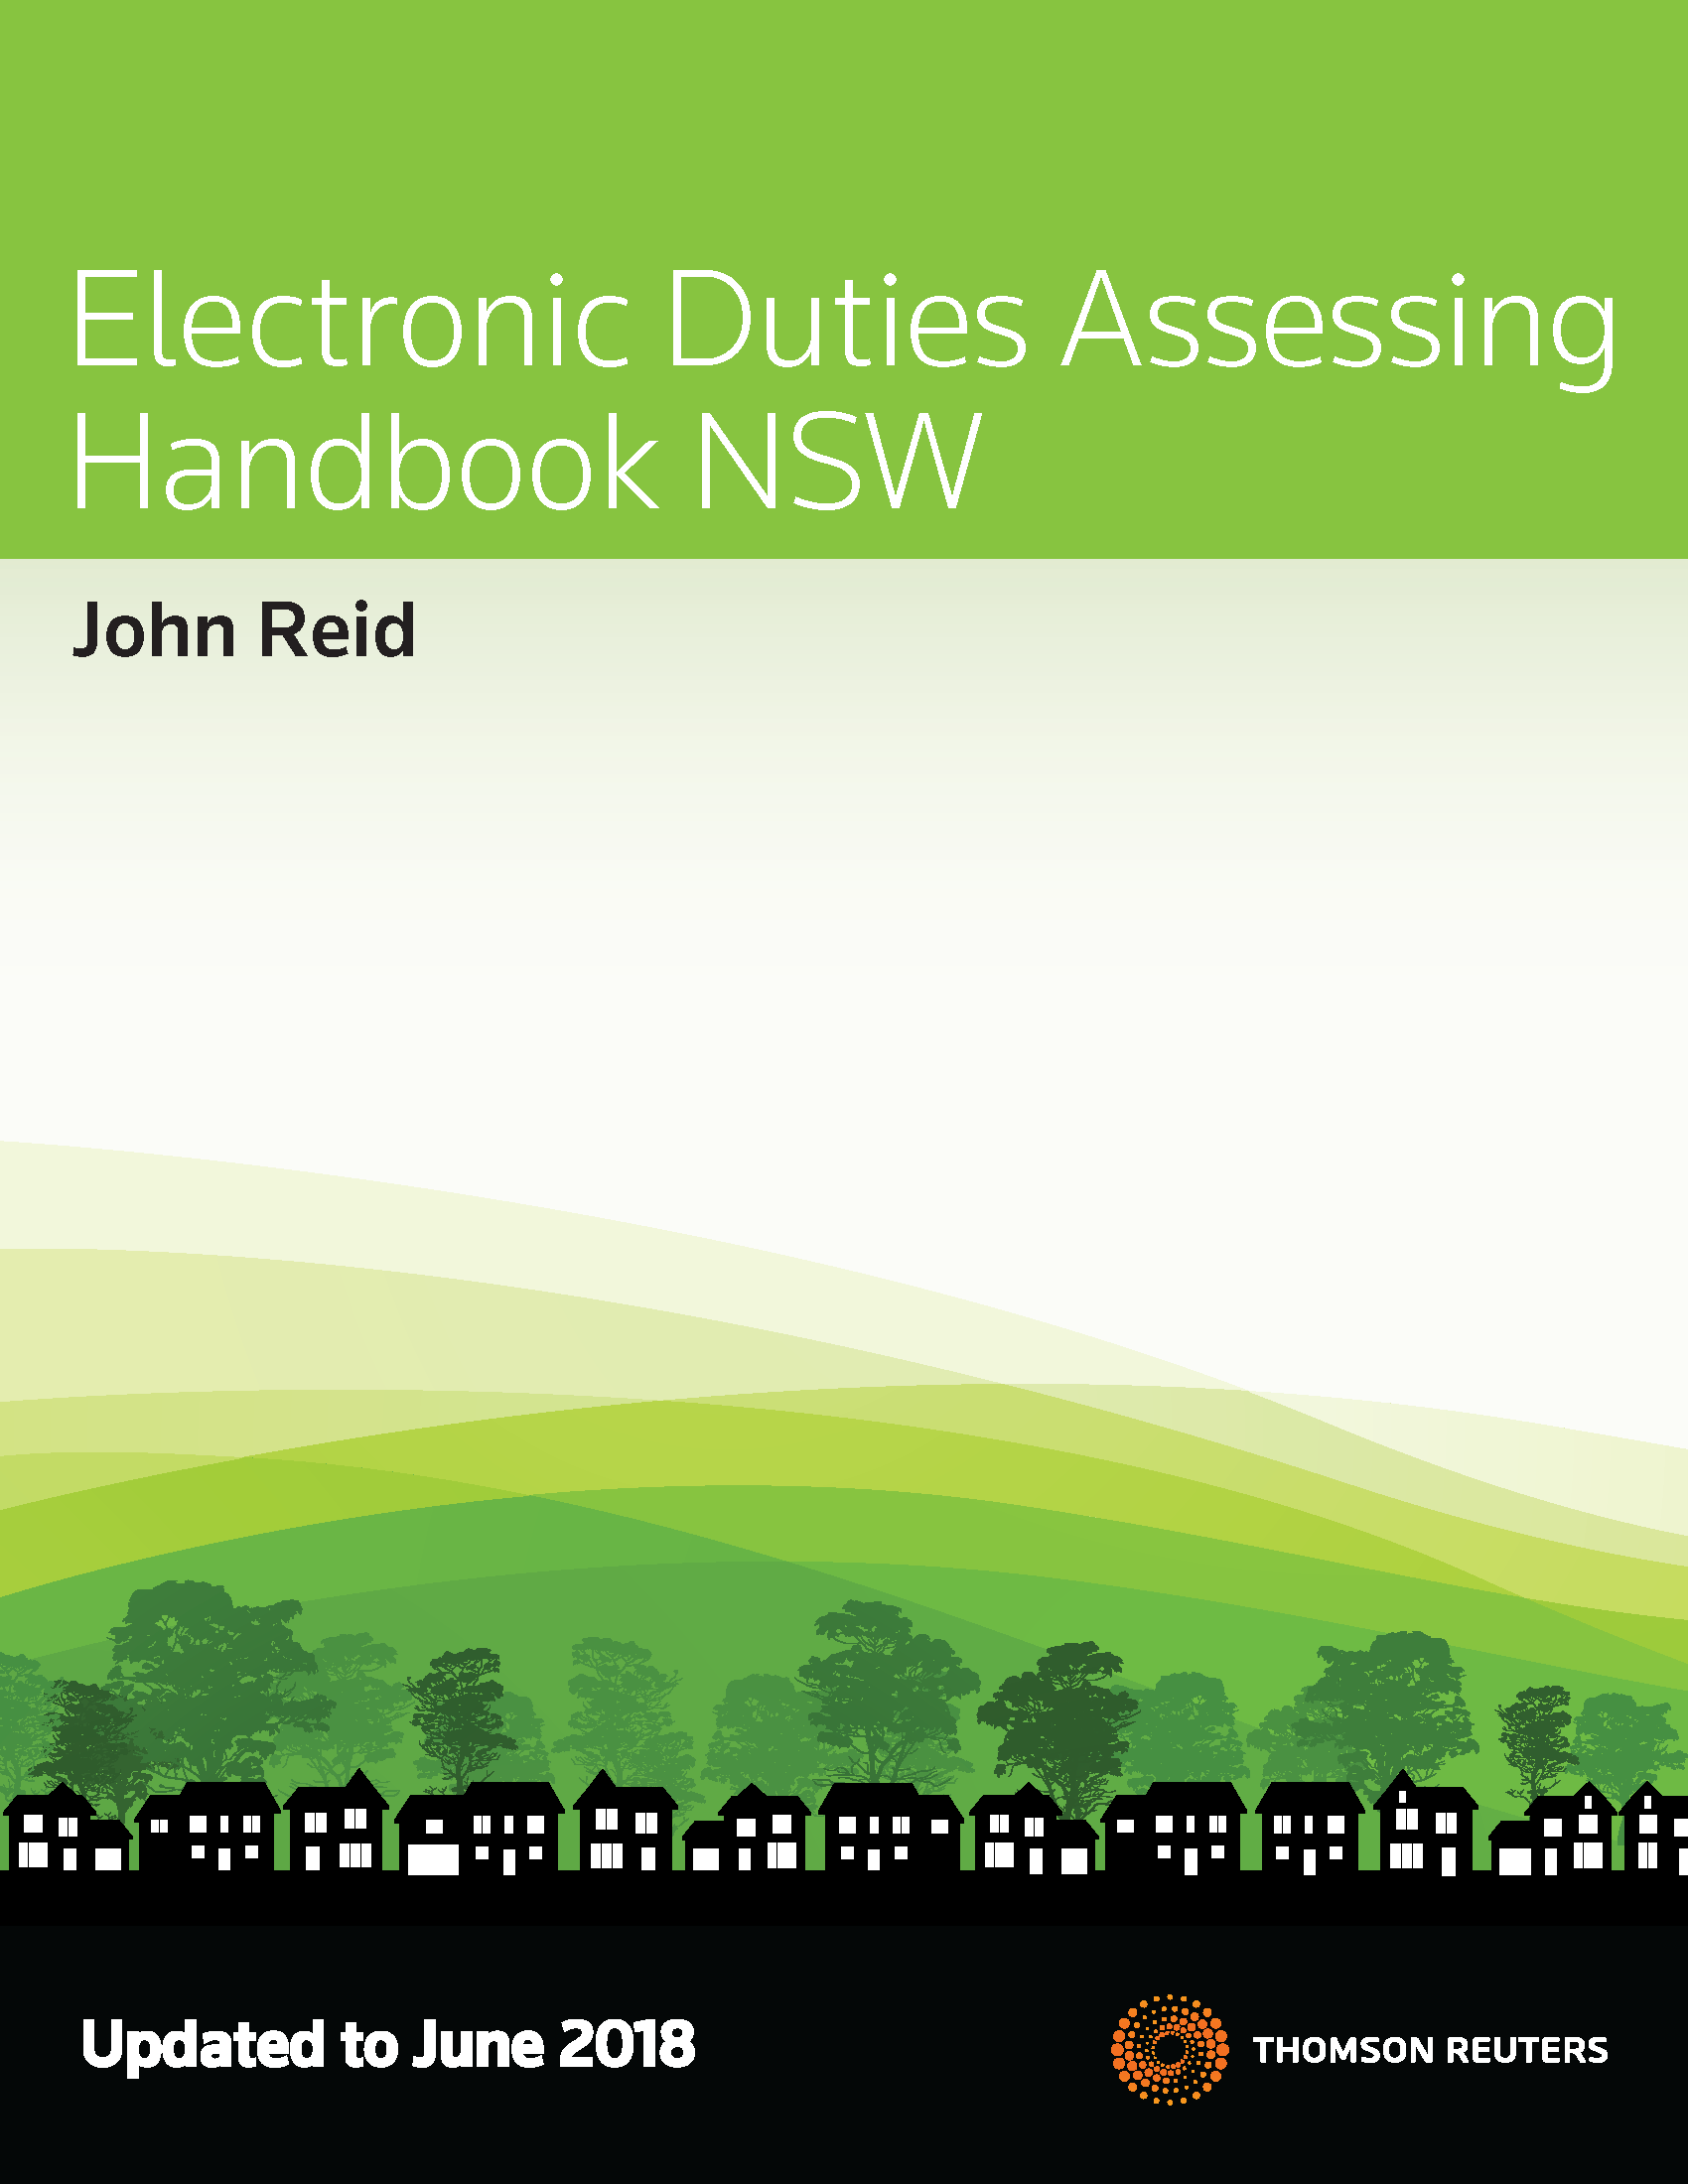 Electronic Duties Assessing Handbook NSW (pdf)